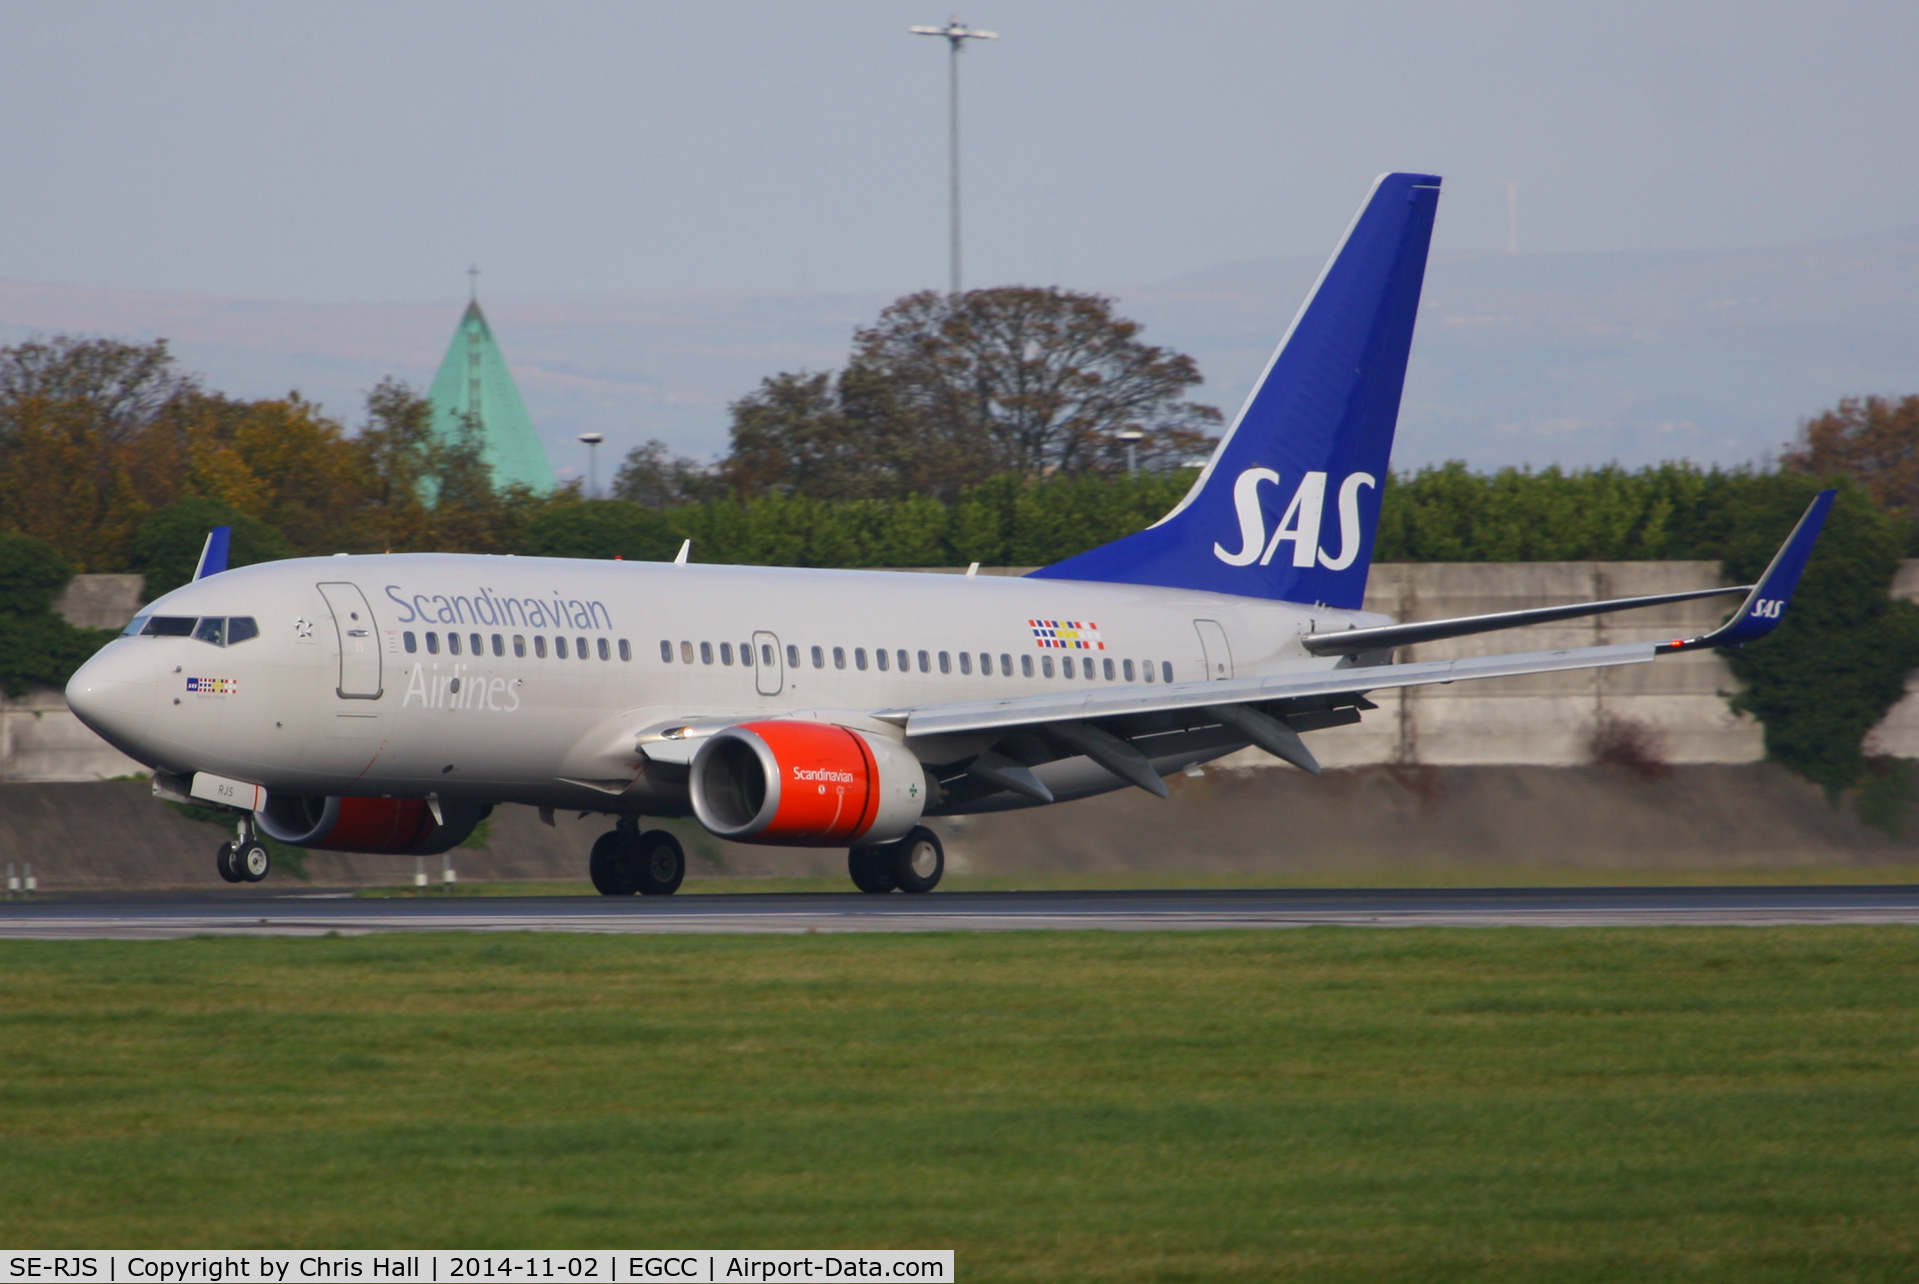 SE-RJS, 2006 Boeing 737-76N C/N 32684, SAS Scandinavian Airlines